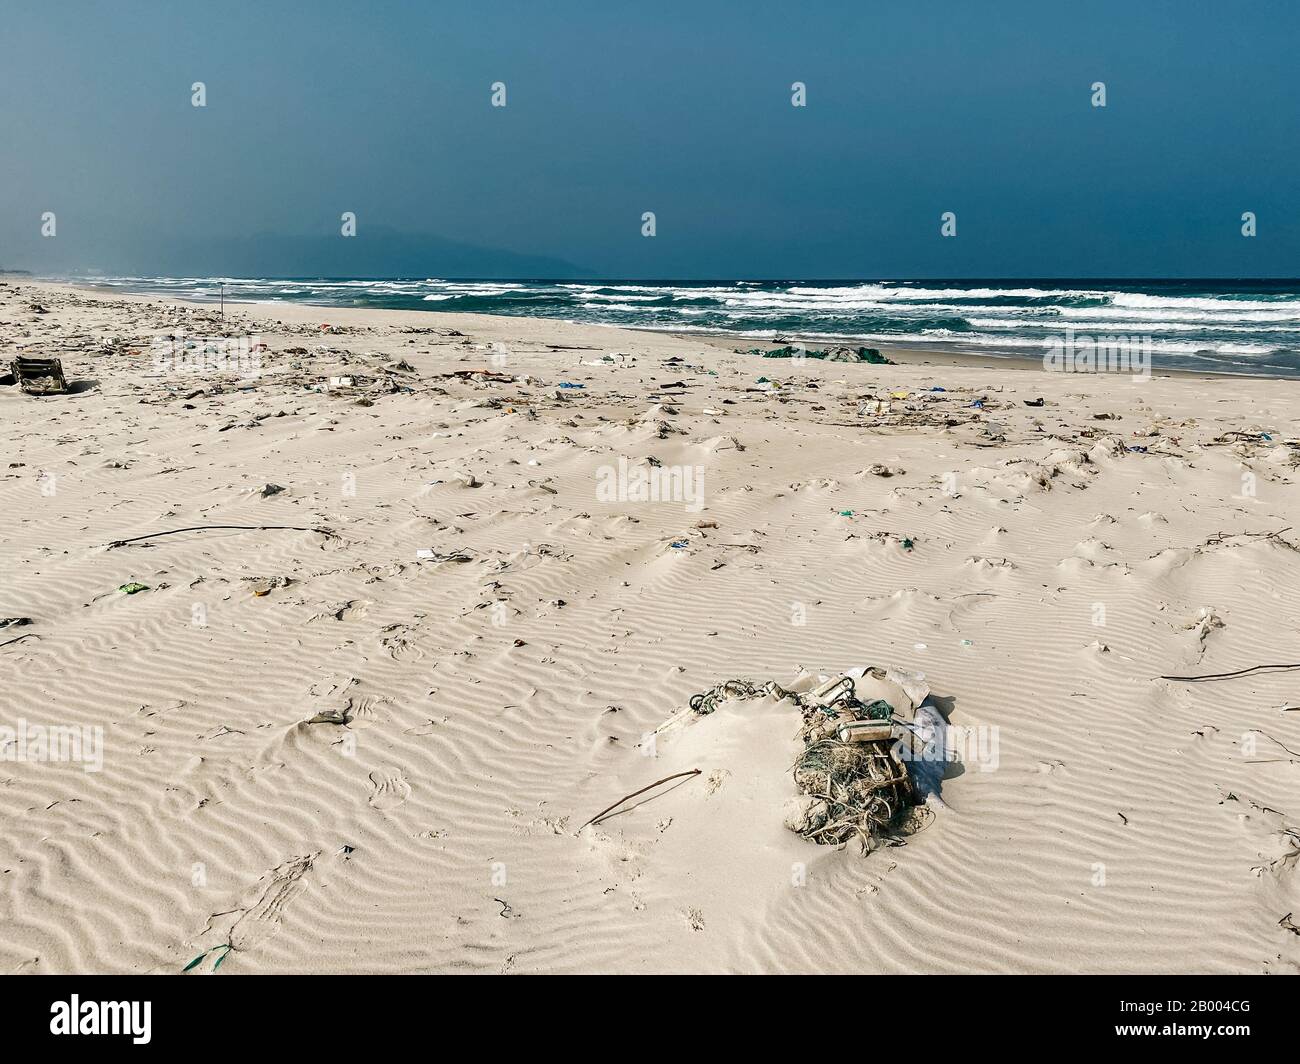 Bouteilles en plastique et autres ordures jetées sur la plage de sable, ordures sur la plage de mer. Problème écologique. Pollution de l'environnement. Plage de sable sale Banque D'Images